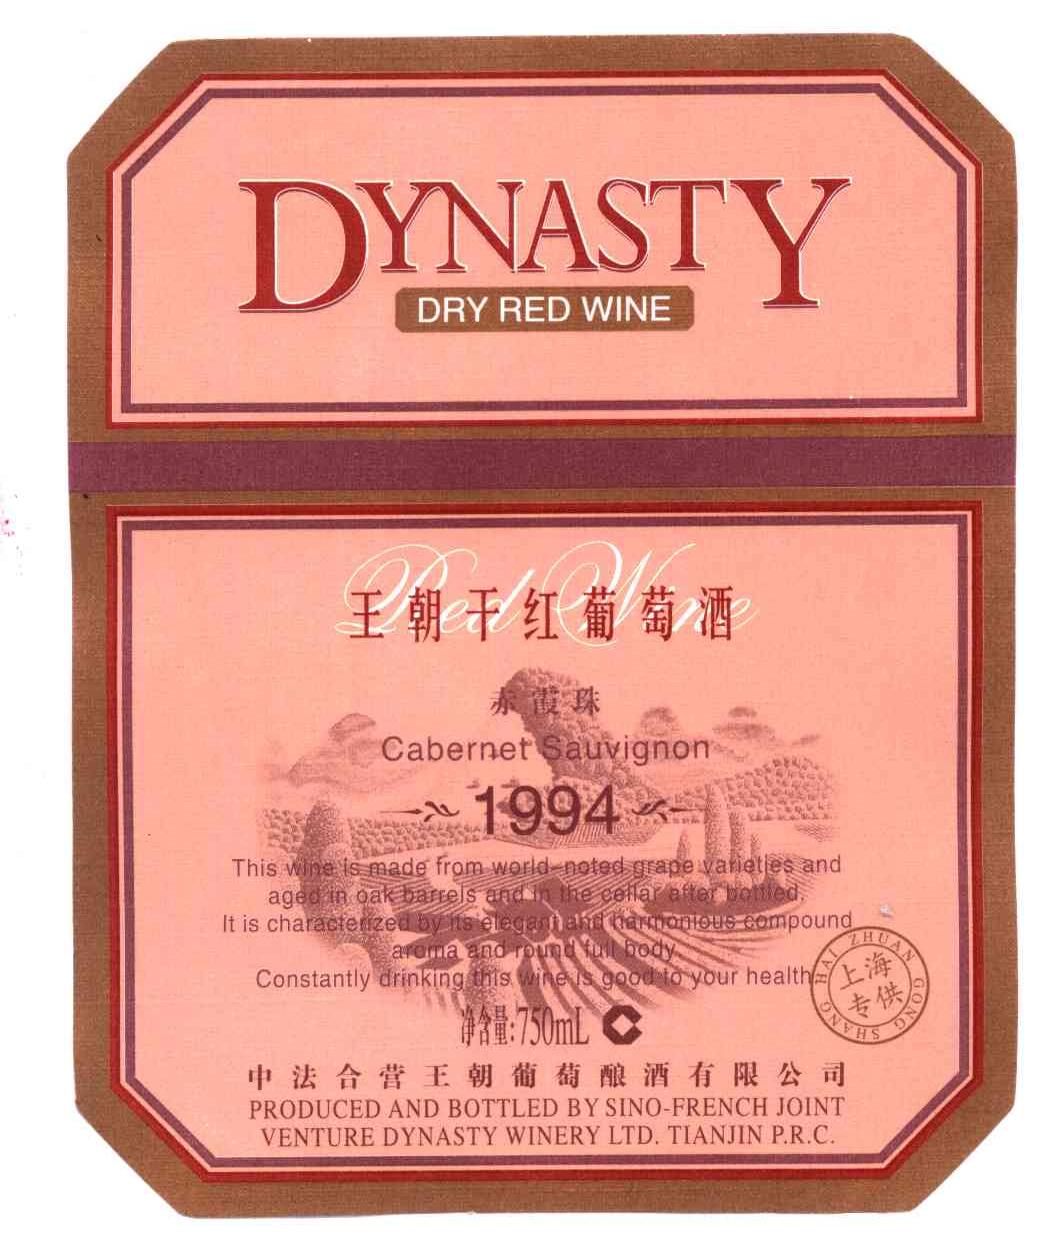 王朝葡萄酒logo图片